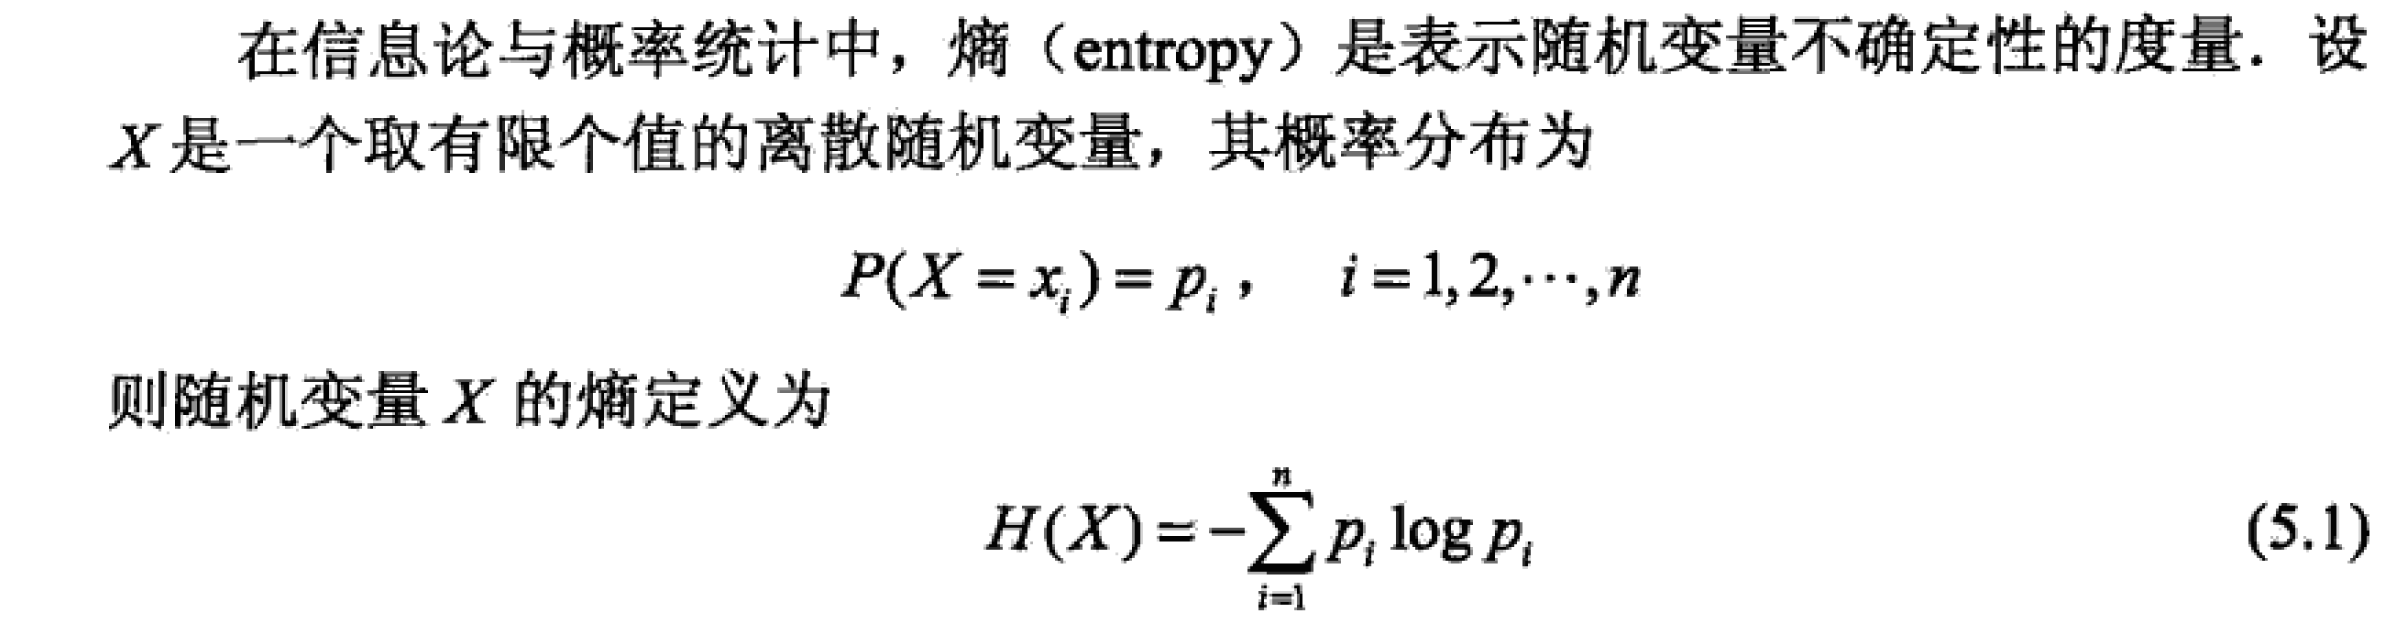 信息熵和基尼系数_信息熵和基尼系数